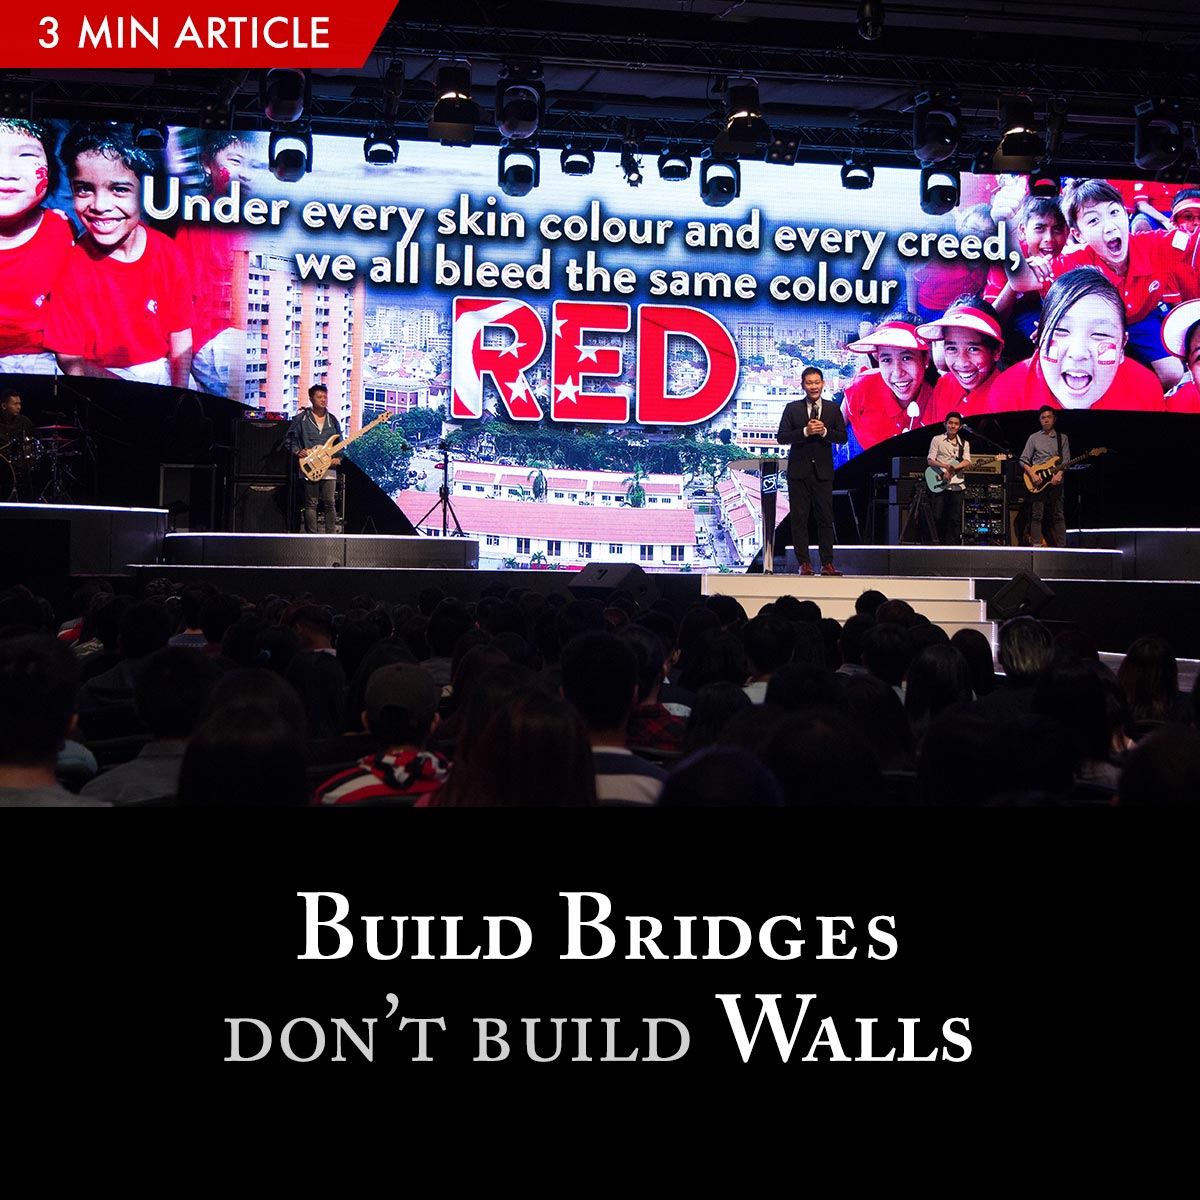 Build Bridges, Don’t Build Walls